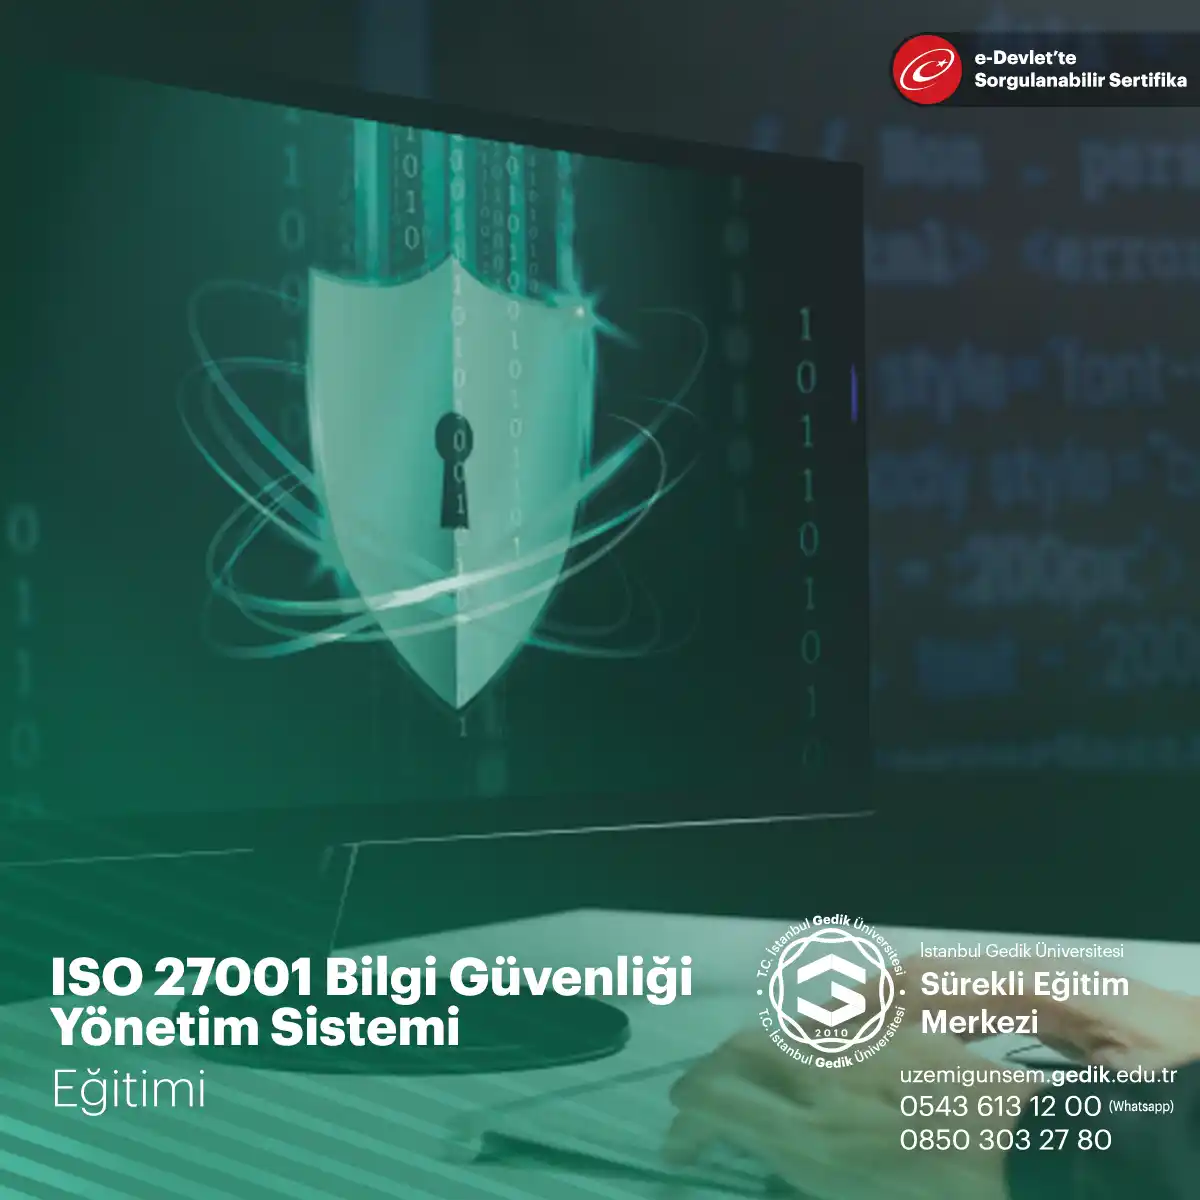 ISO 27001 Bilgi Güvenliği Yönetim Sistemi, bilginin güvenliği konusunda işletmelerin izlemesi gereken yol haritasını ortaya koymaktadır. Bilginin gizliliği kadar ona sadece yetkili kişilerin erişimini doğru şartlar altında sağlamak da yine bu standardın içerisinde yer alan bir diğer konudur.